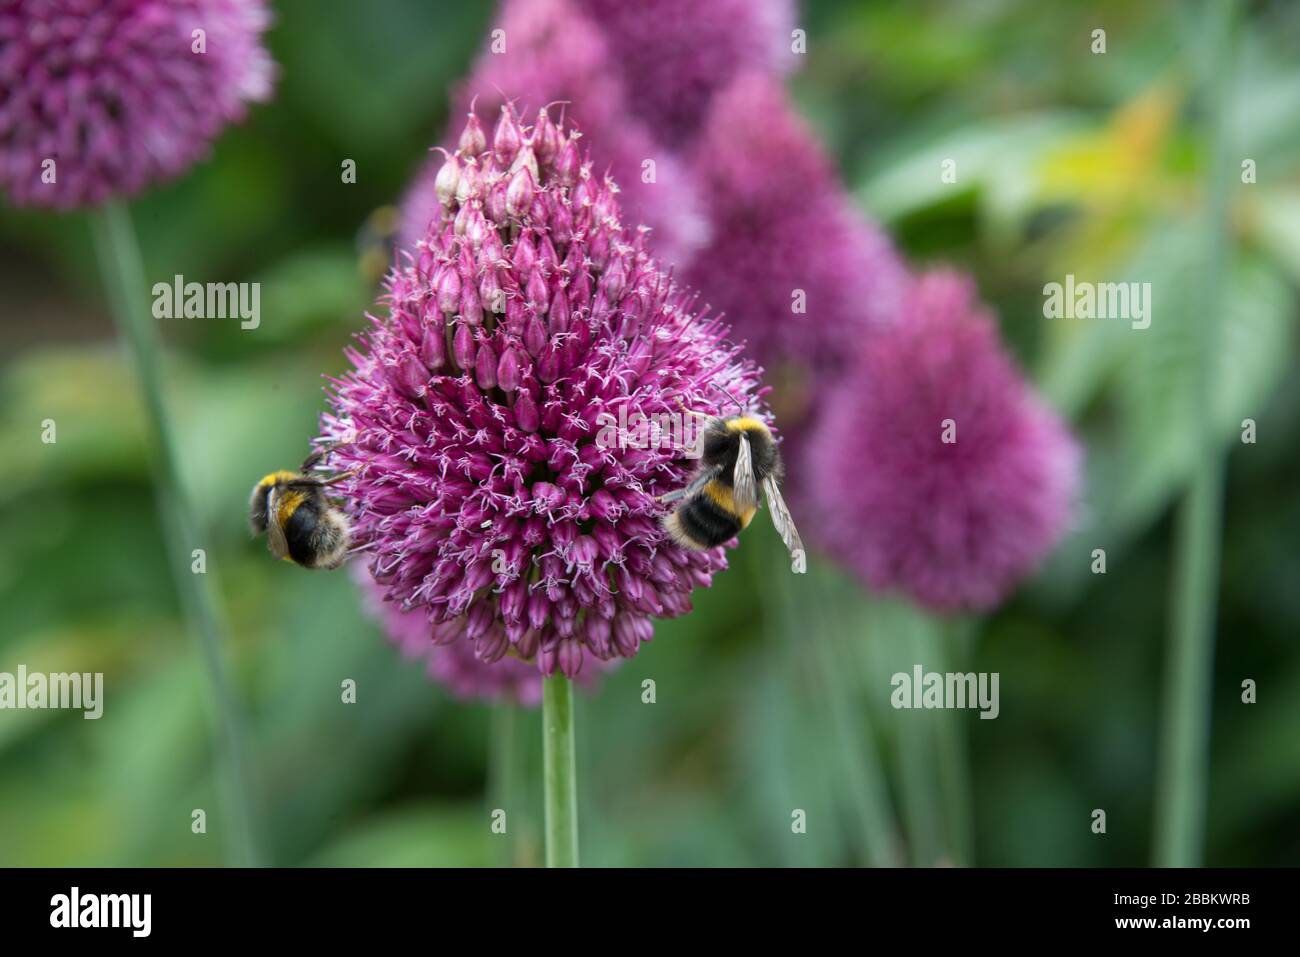 Fauna selvatica del Regno Unito. Ape bumble su un germoglio viola di allium. Towcester, Northampton, Regno Unito Foto Stock